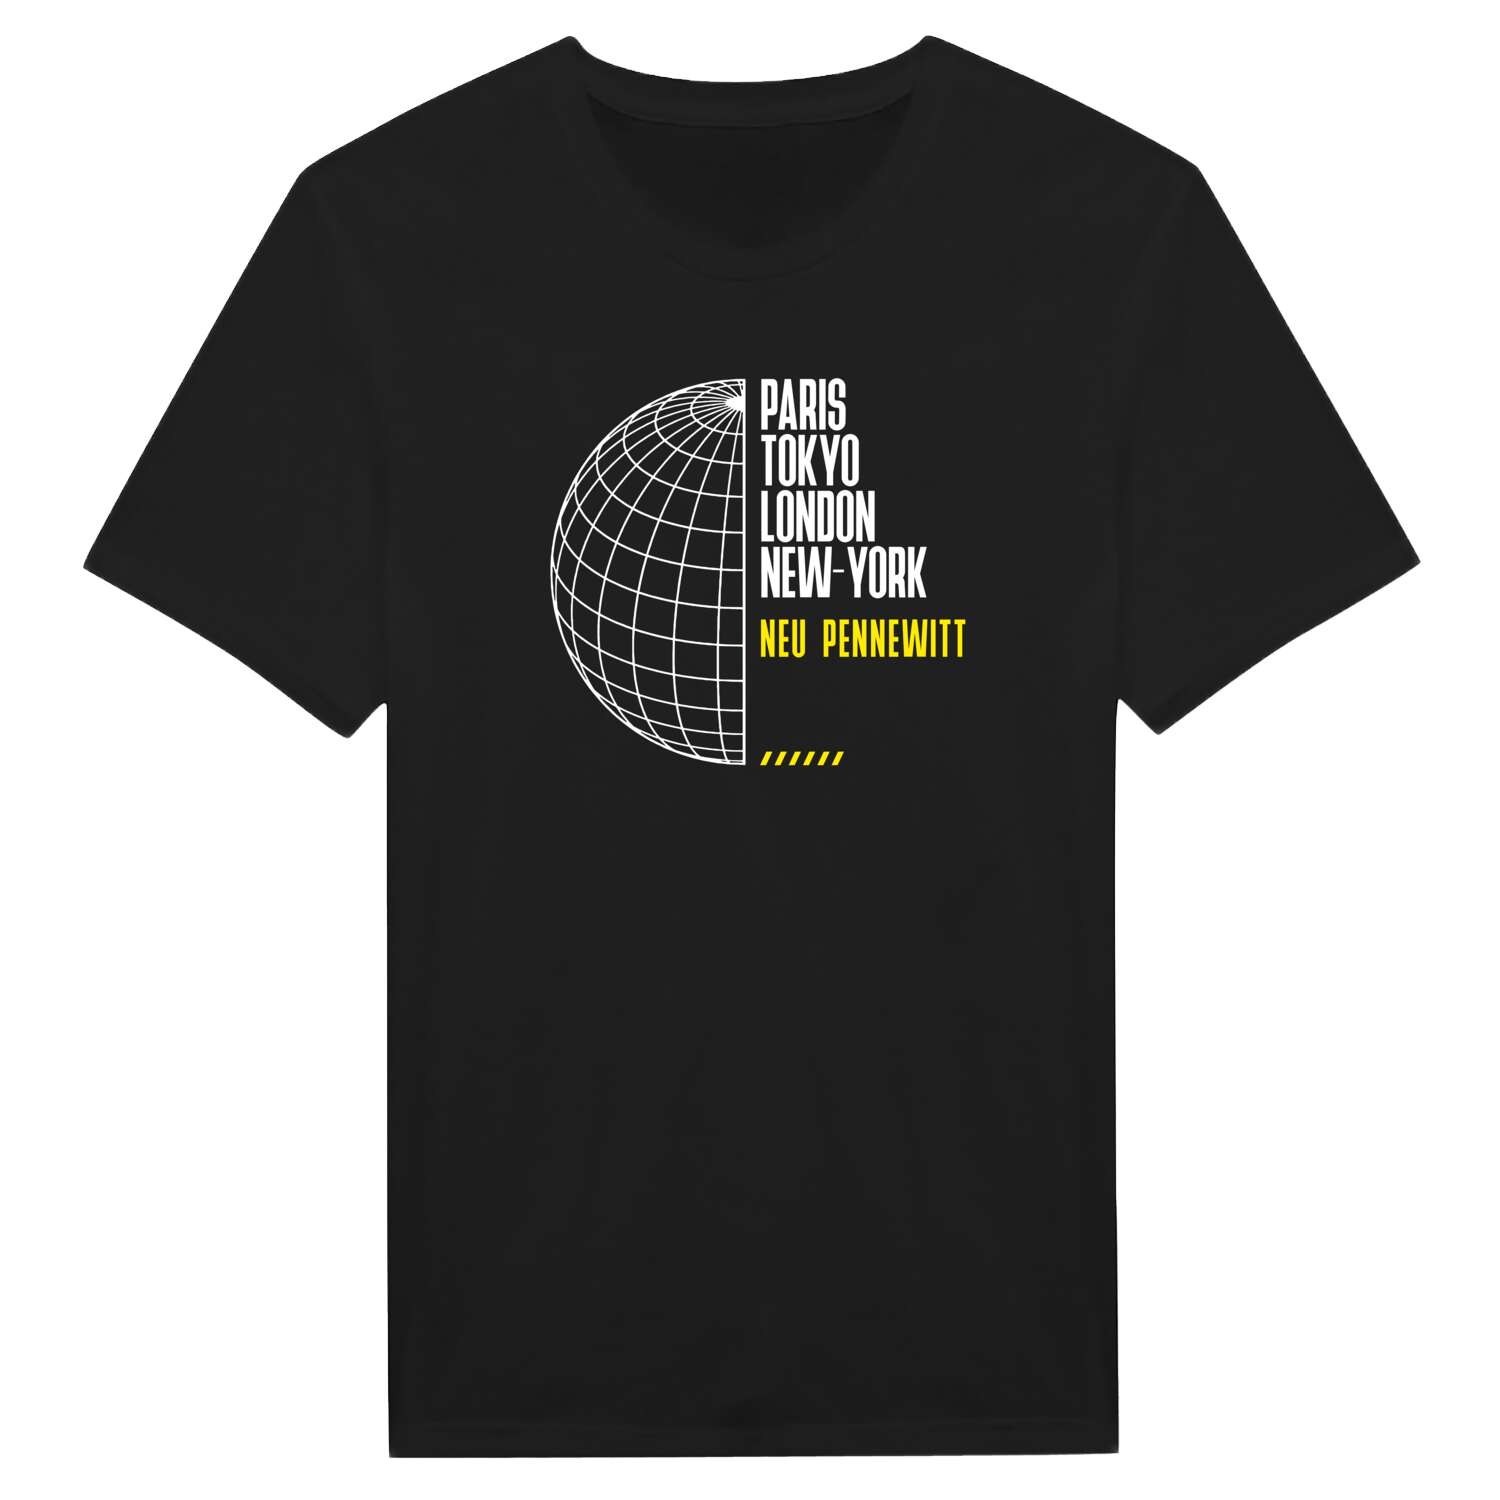 Neu Pennewitt T-Shirt »Paris Tokyo London«